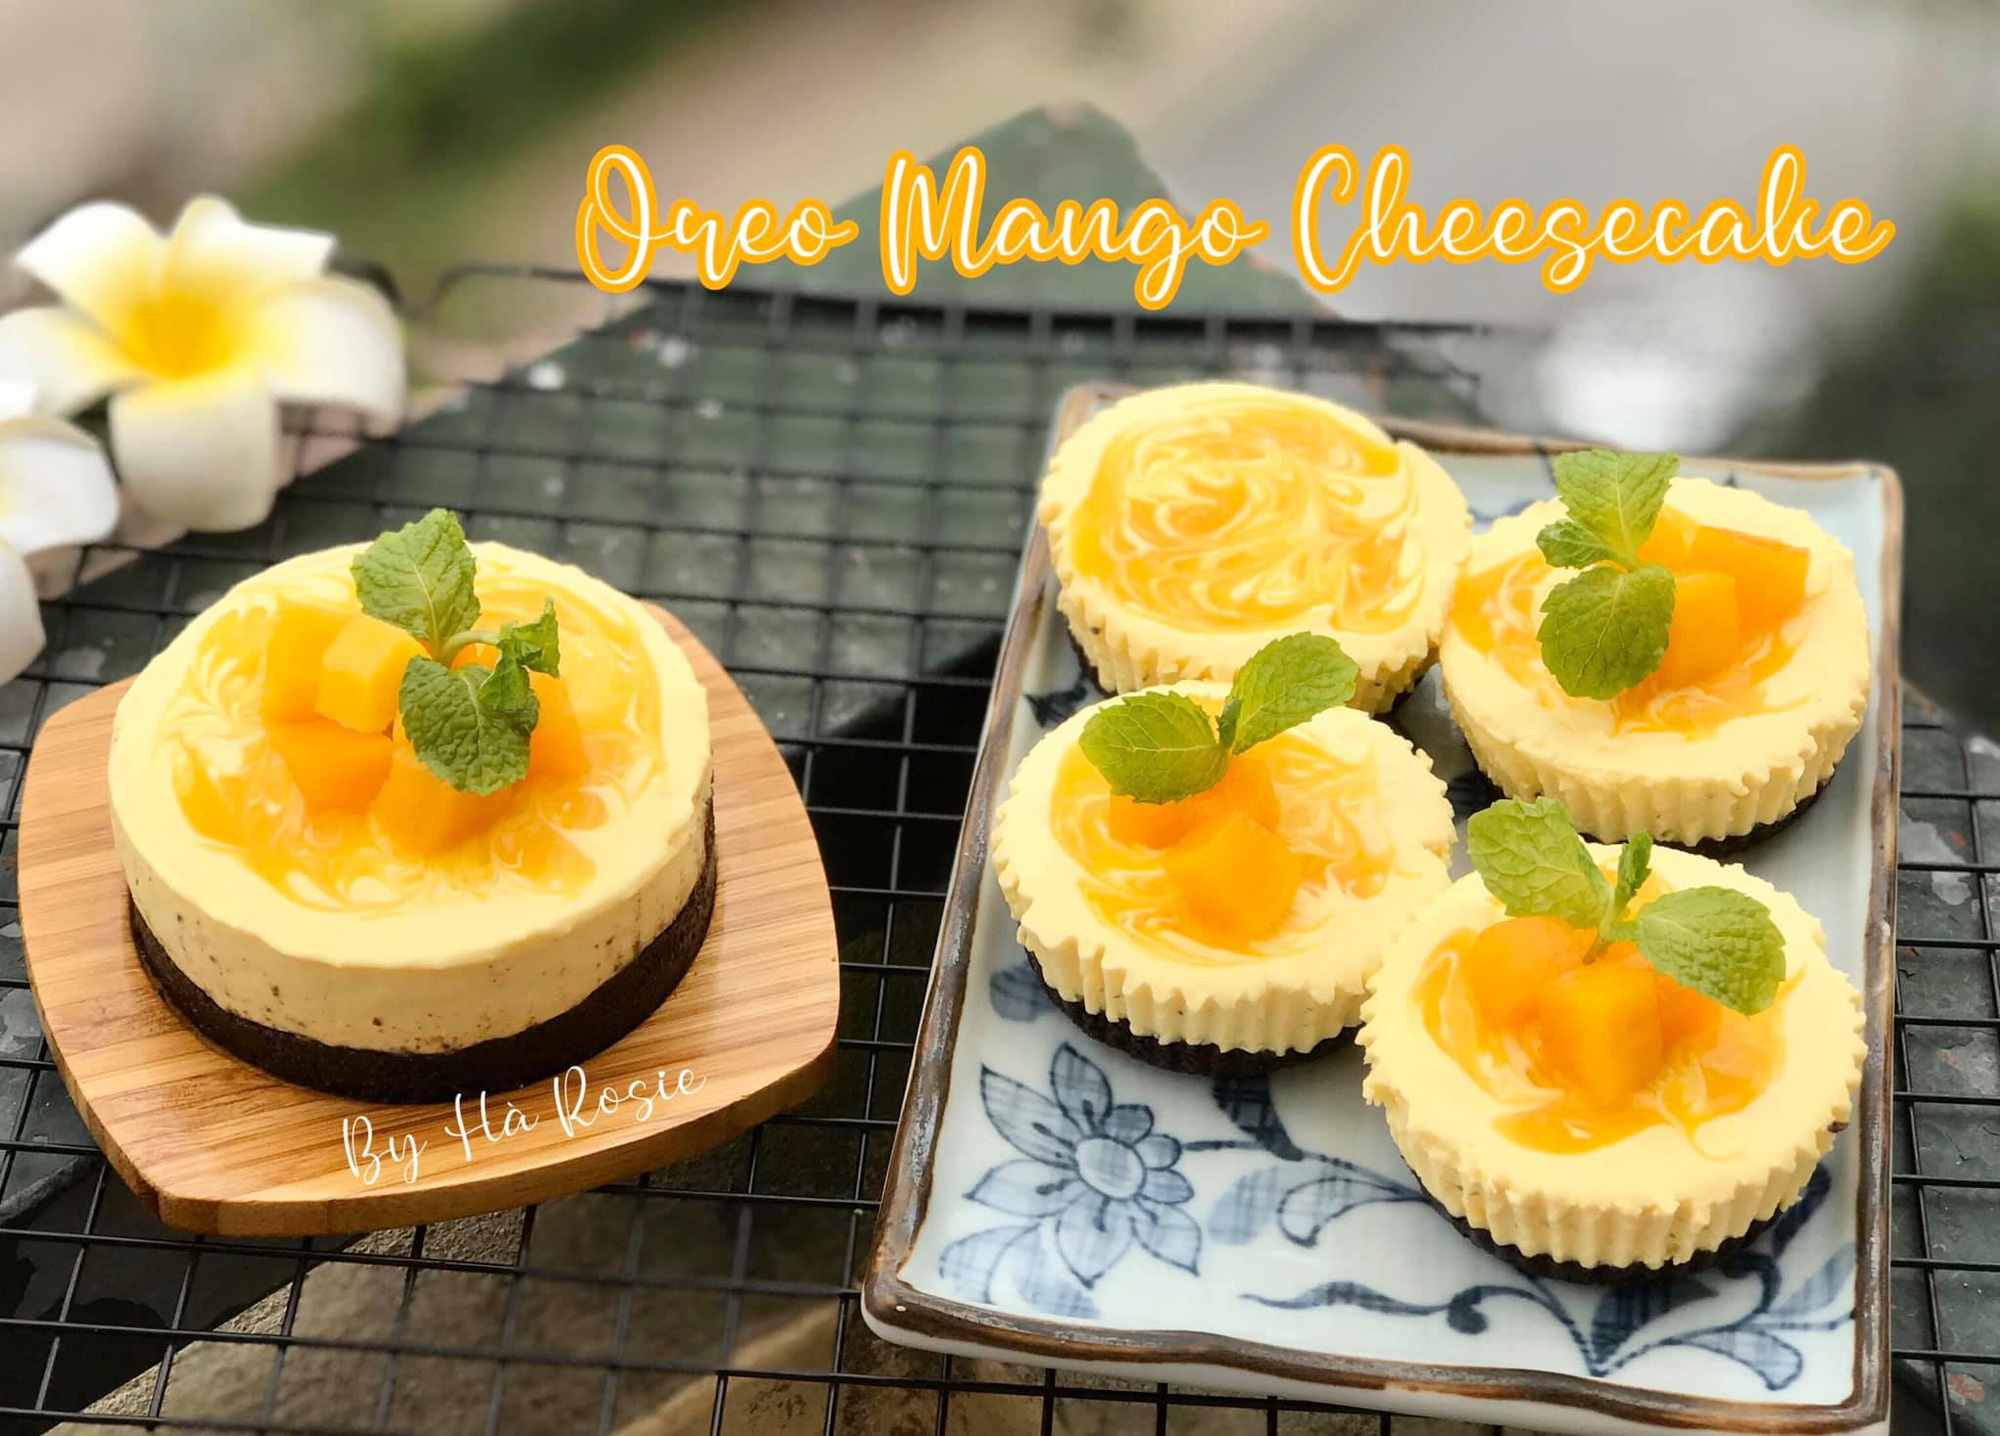 Bánh ngọt xua tan cơn buồn - Oreo Mango Cheesecake! - Ảnh 1